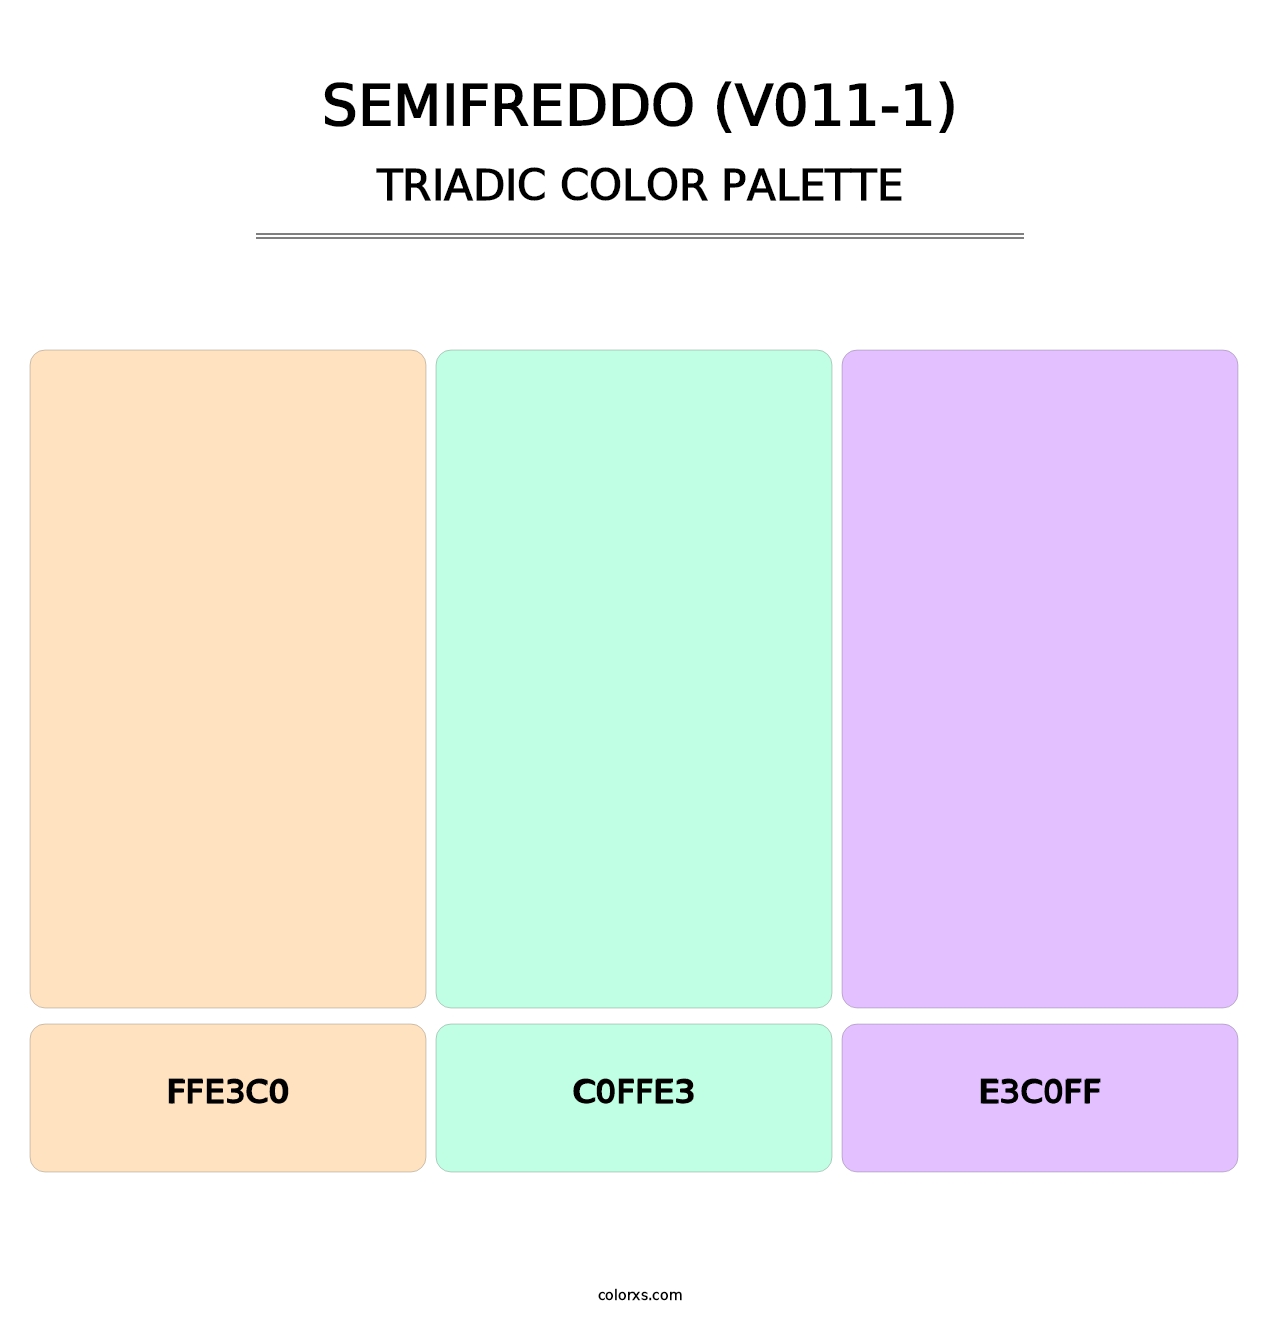 Semifreddo (V011-1) - Triadic Color Palette